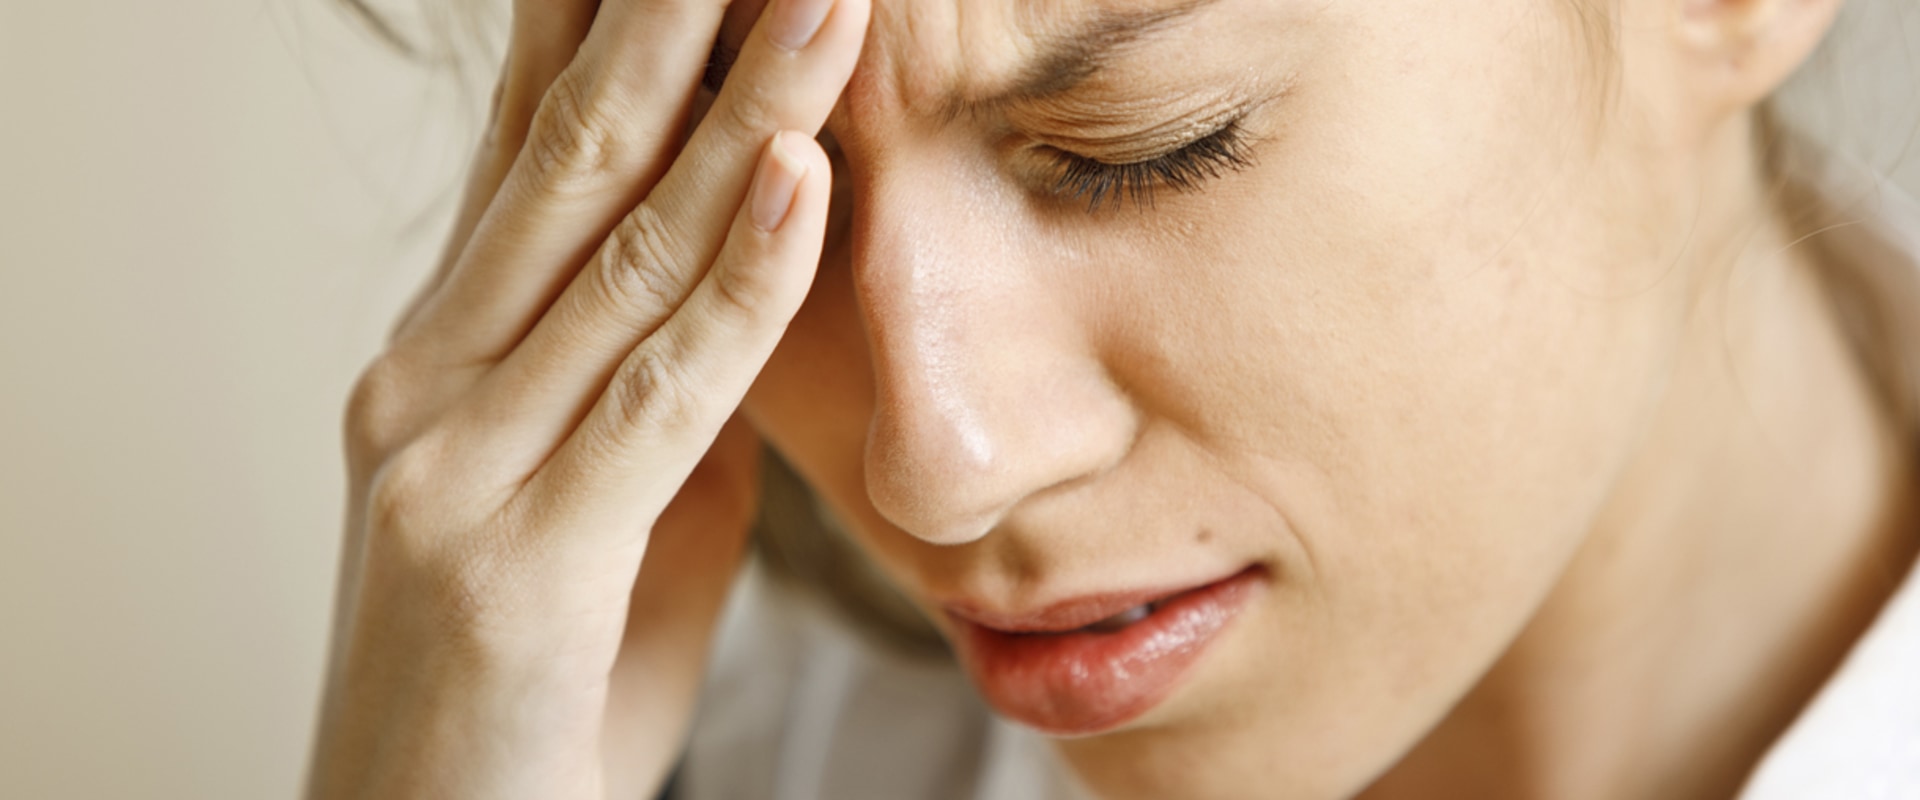 Hoe stop je hoofdpijn?